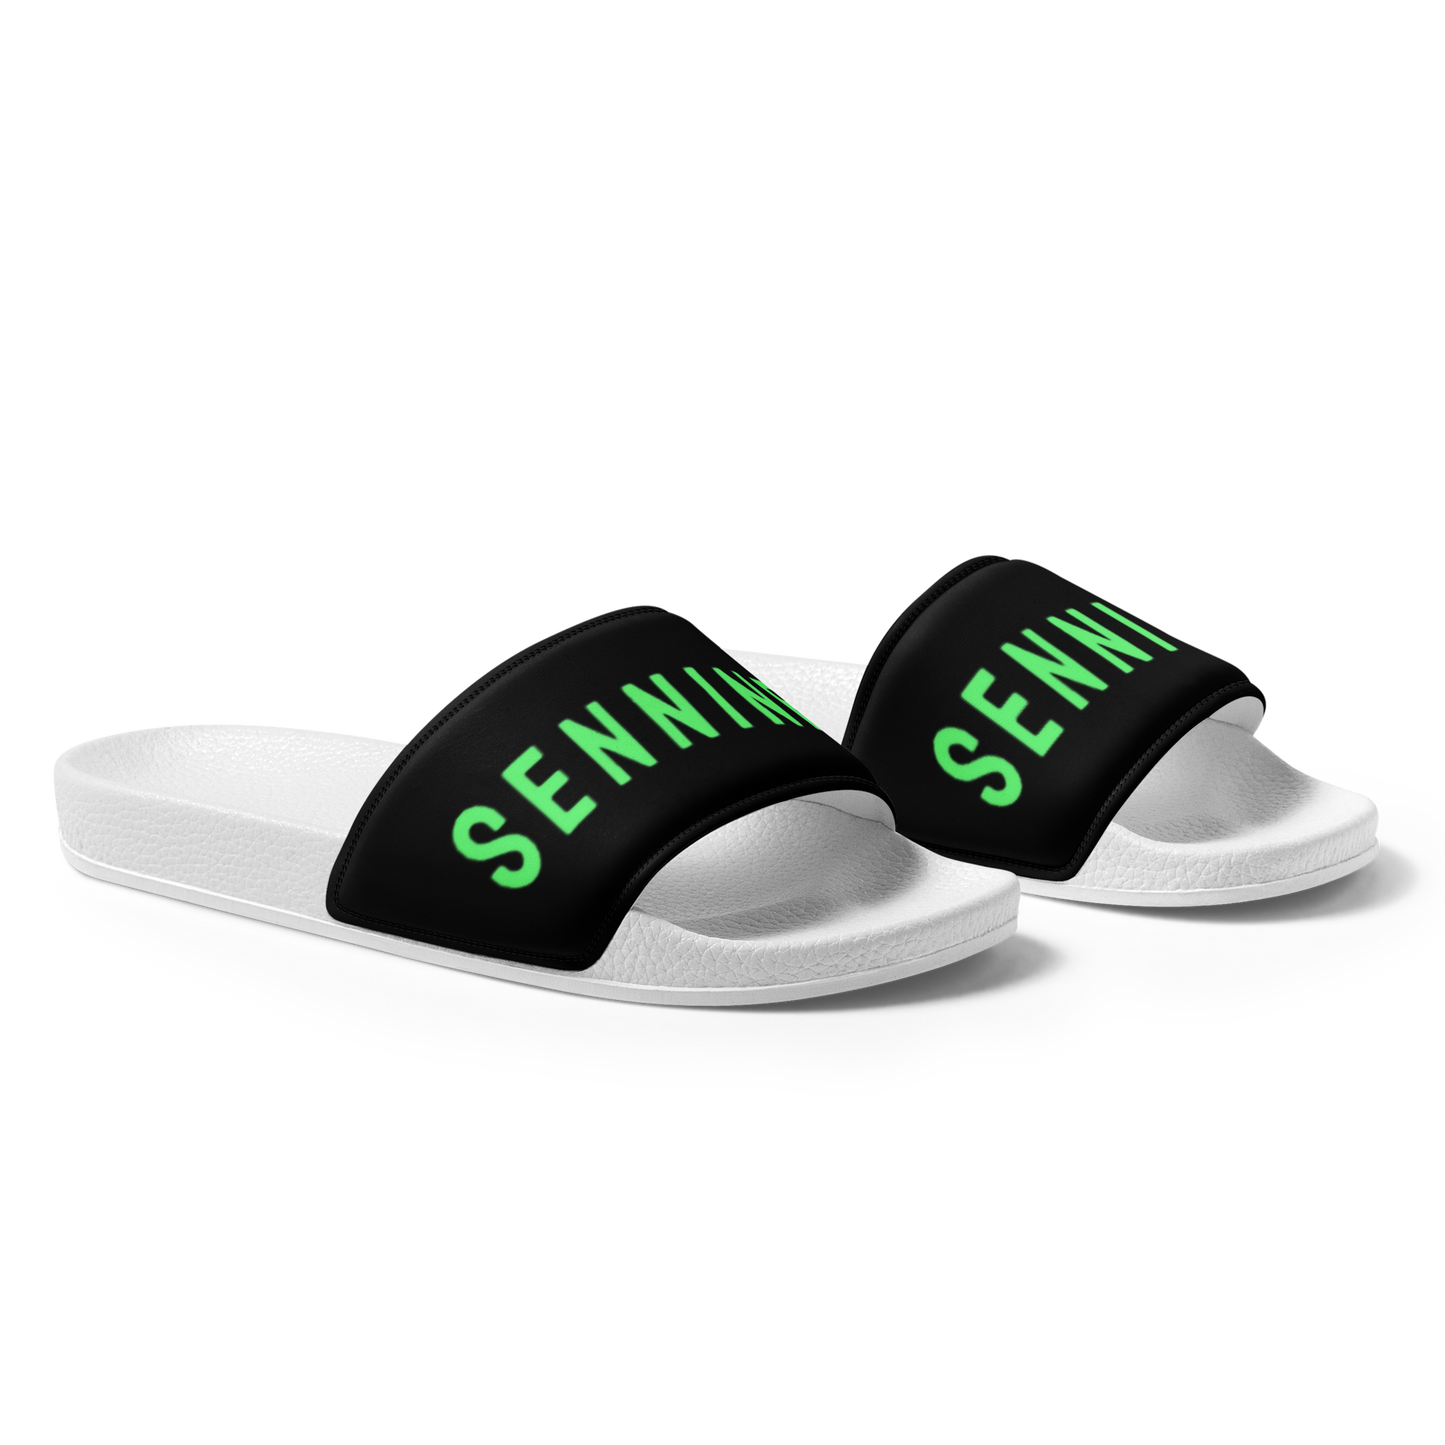 Sennin Men’s Slides